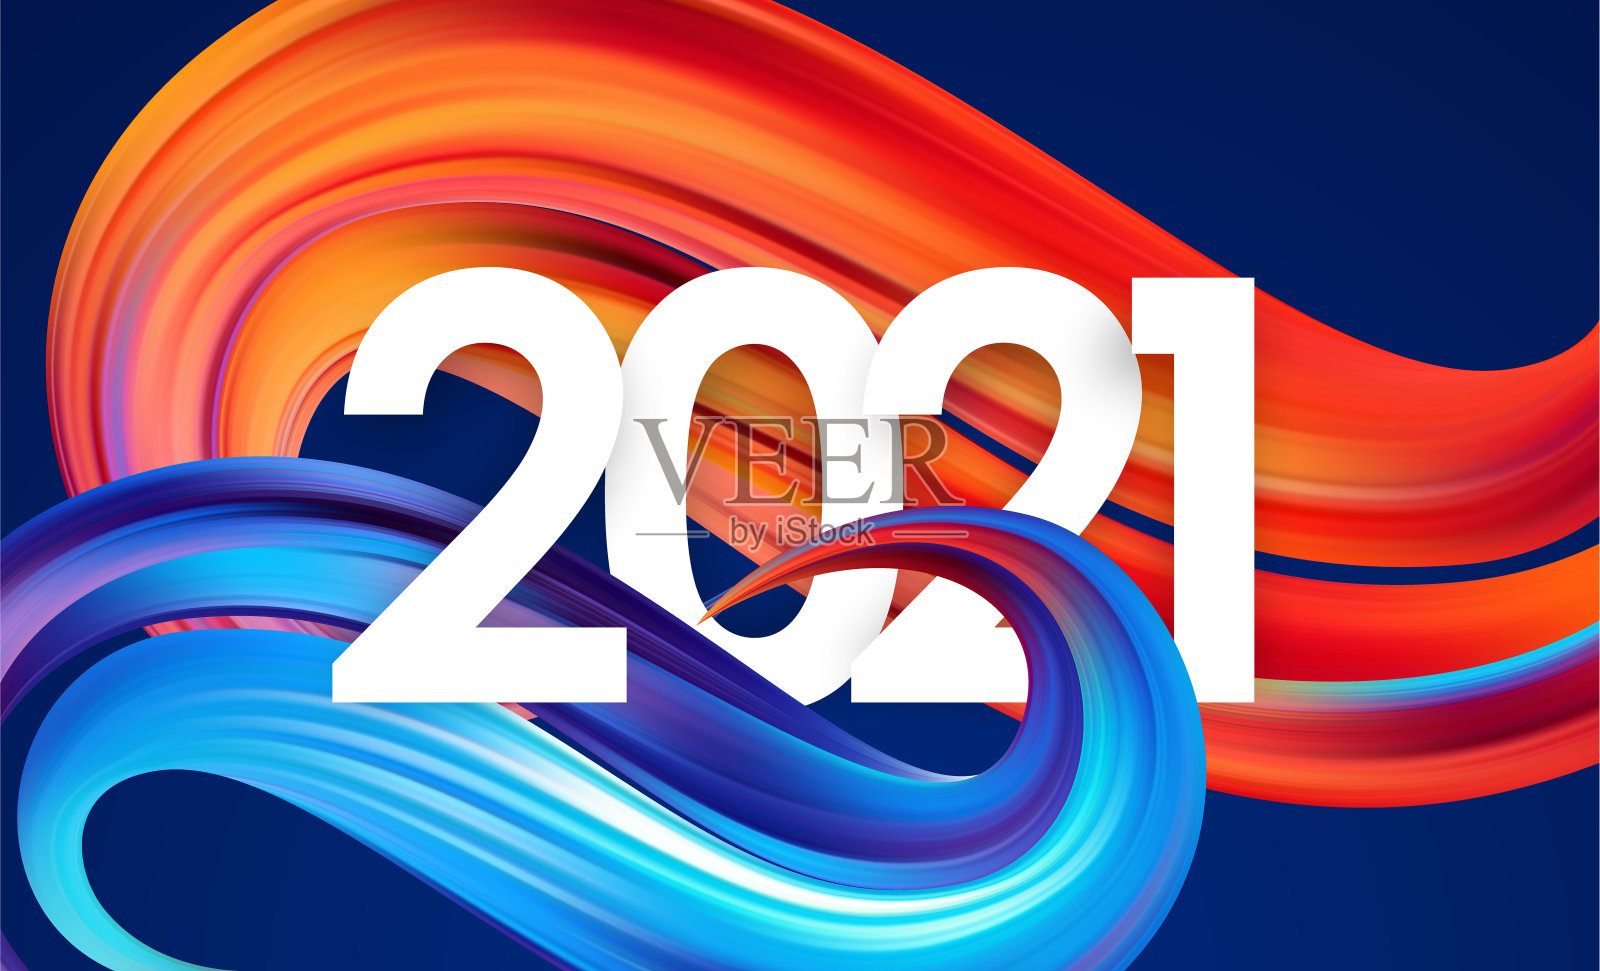 2021年数字与彩色抽象扭曲油漆笔触形状。时尚的设计插画图片素材